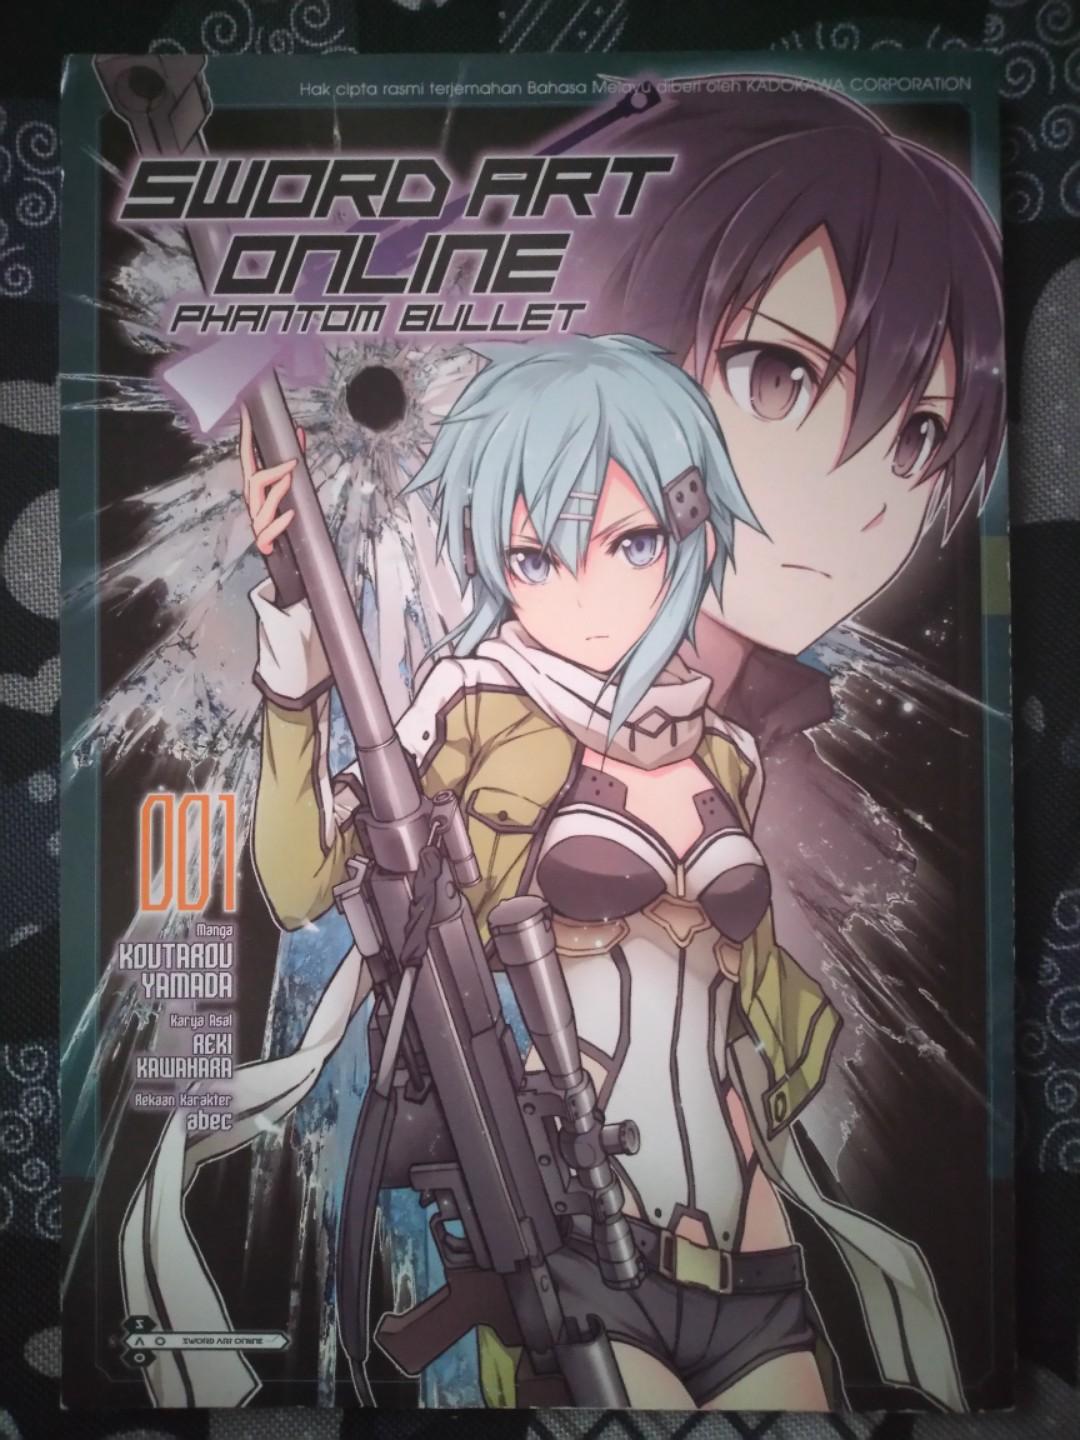 Sword Art Online Vol.1-26 [ in Japanese ] Set Light Novel SAO